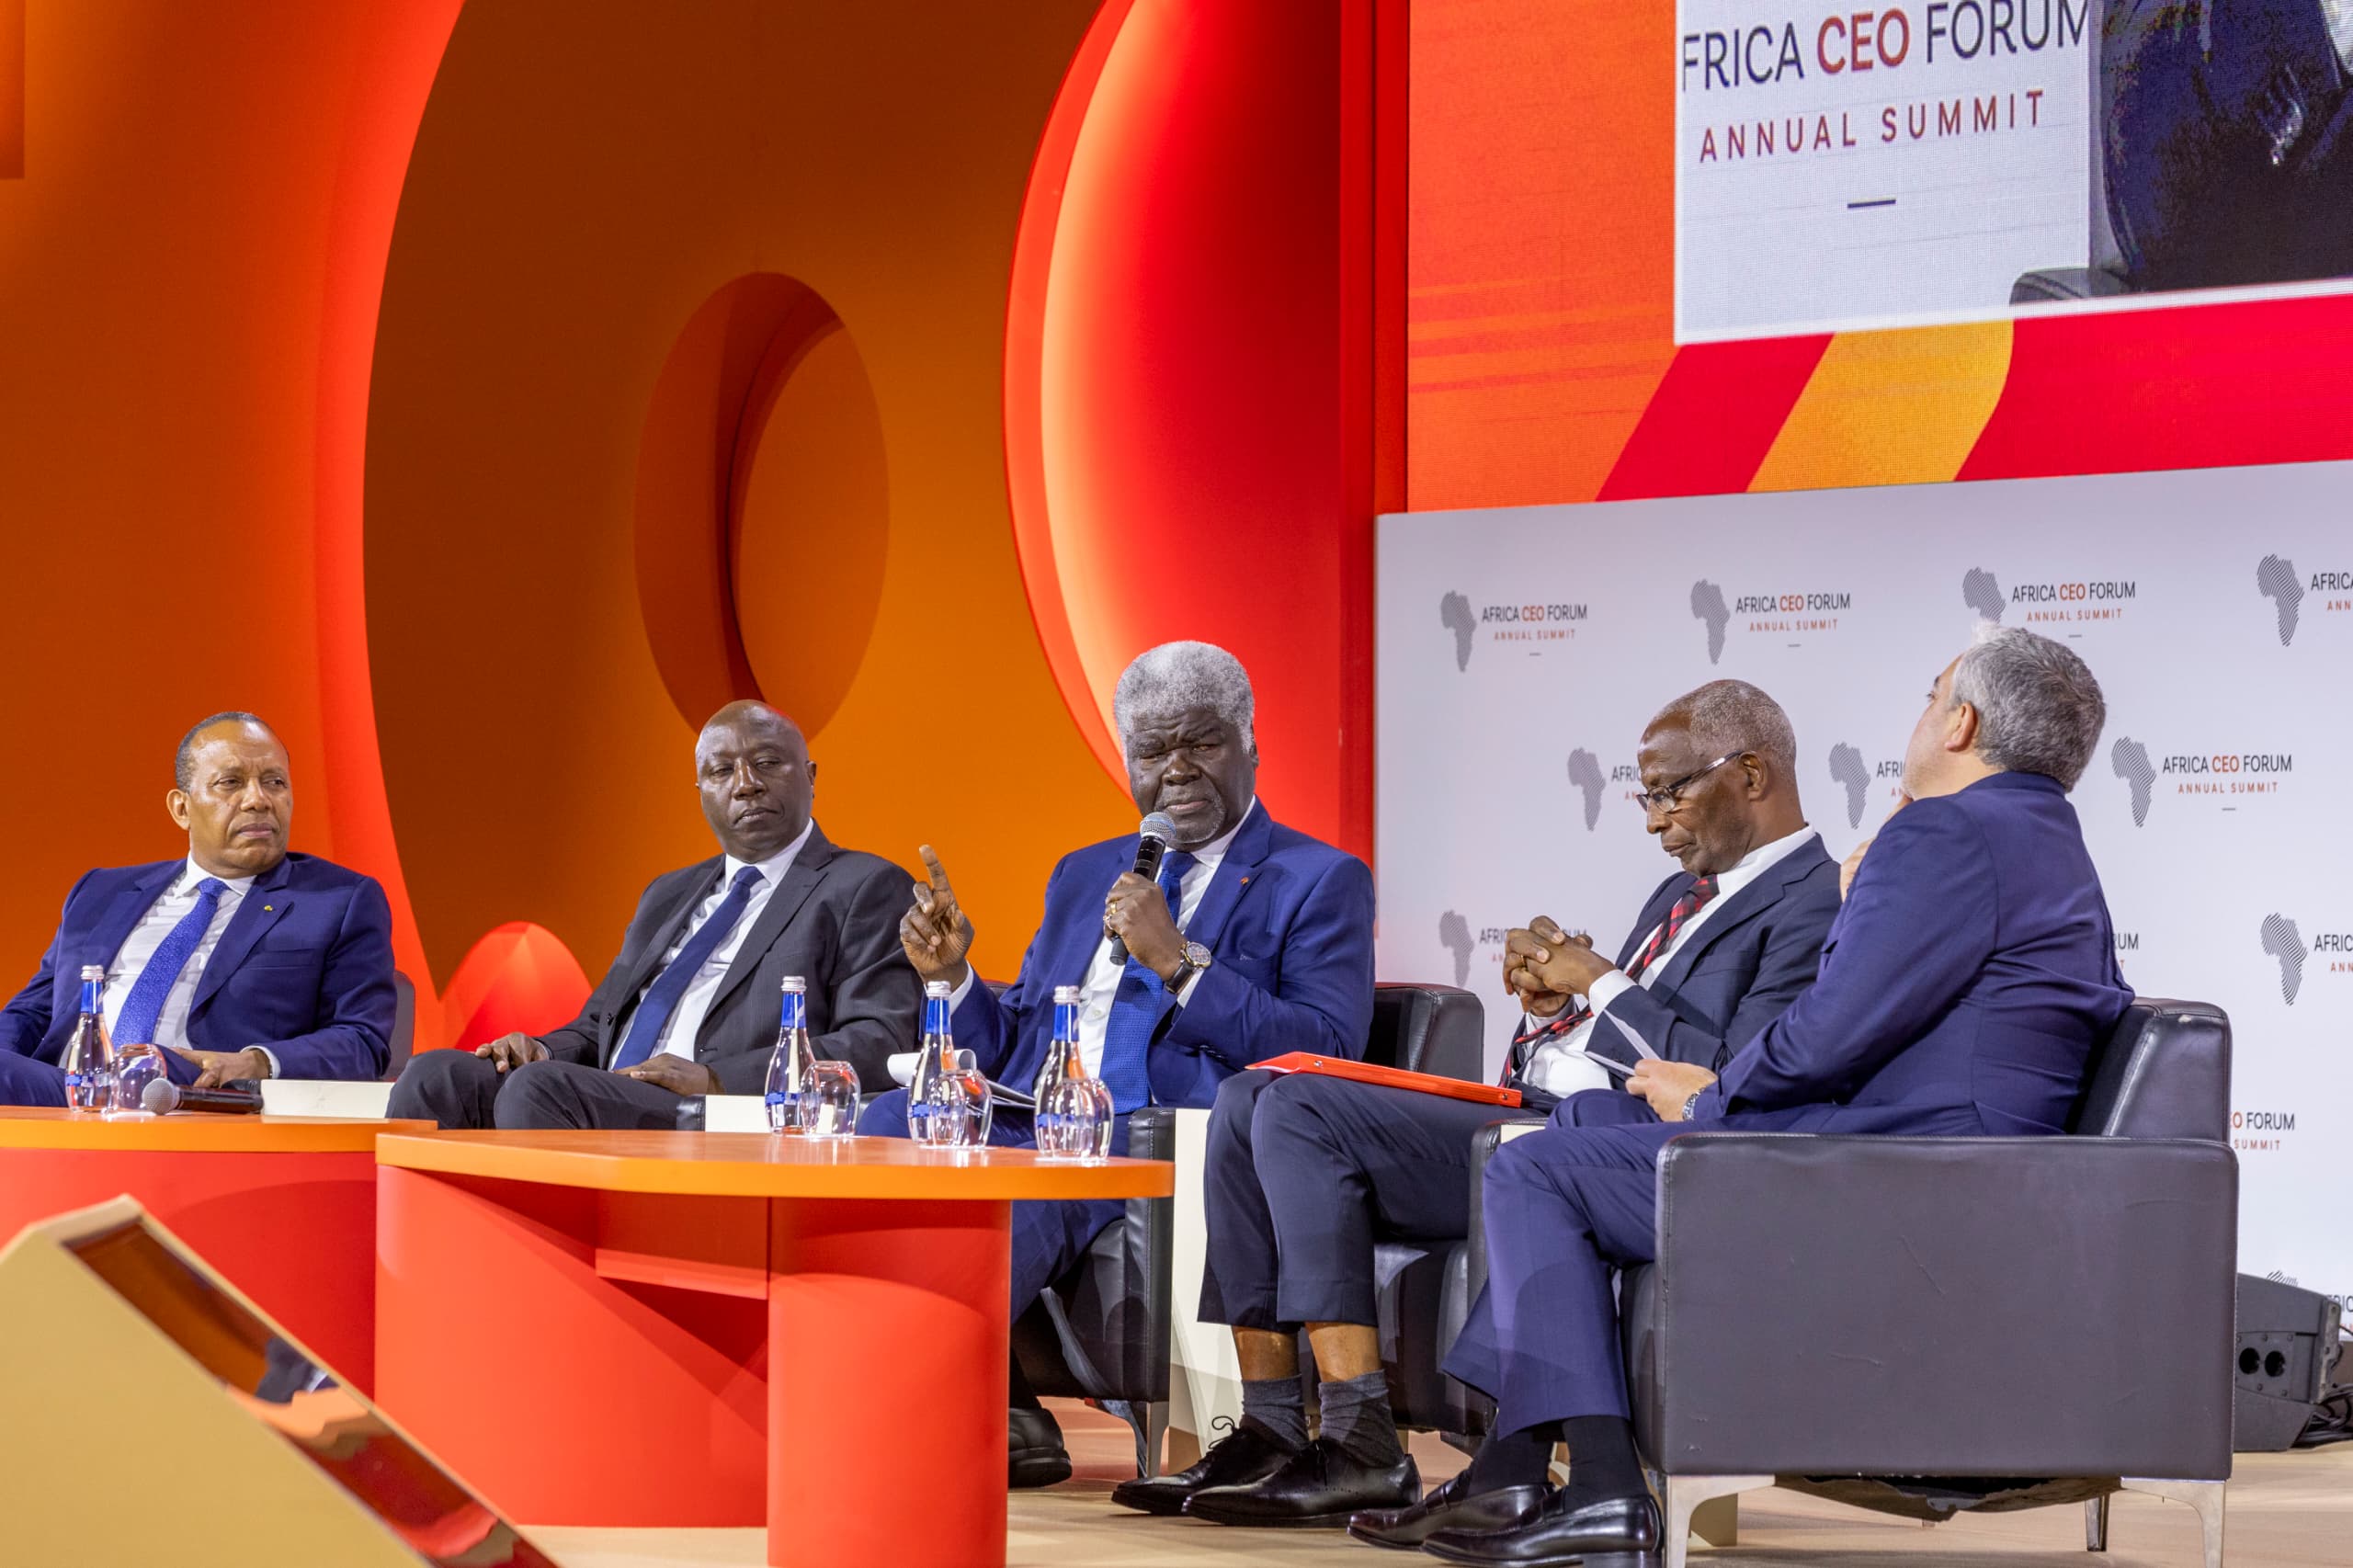 Africa Ceo Forum à Kigali: Beugré Mambé présente la politique de la Côte d'Ivoire pour l’amélioration de son climat des affaires